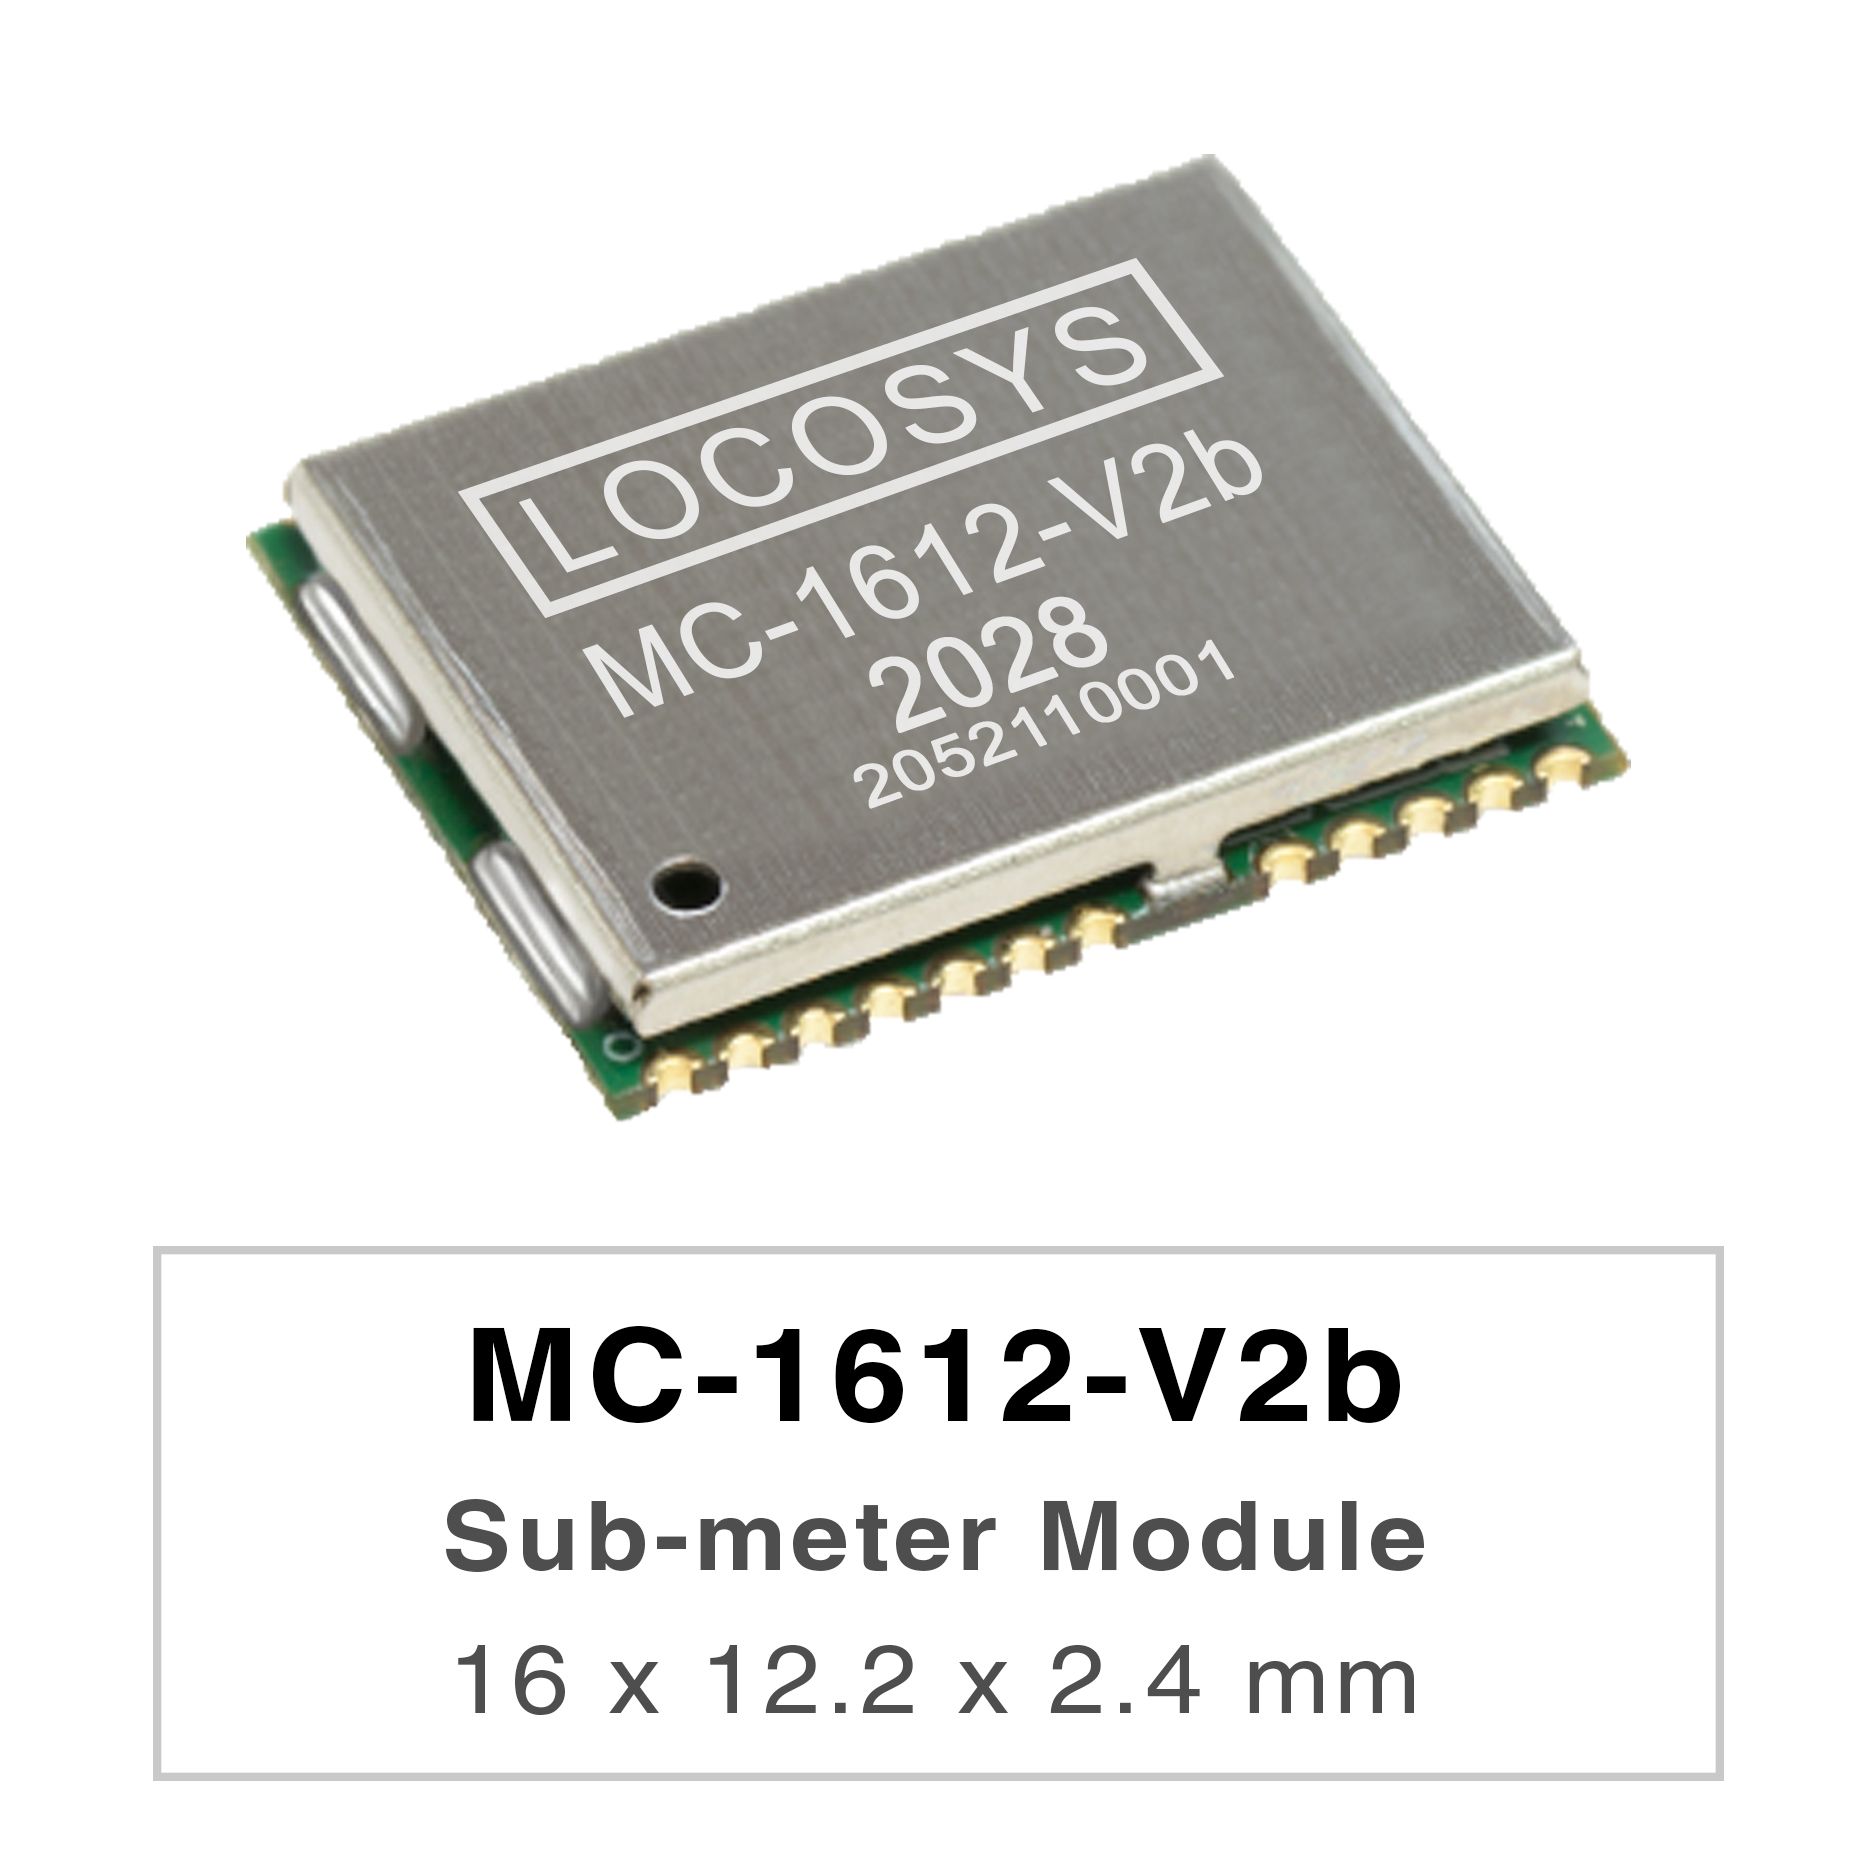 Серия LOCOSYS MC-1612-Vxx представляет собой высокопроизводительные двухдиапазонные модули позиционирования GNSS,
     <br />способные отслеживать все глобальные системы гражданской навигации. Они используют 12-нм процесс и интегрируют эффективную
     <br />архитектуру управления питанием для обеспечения низкого энергопотребления и высокой чувствительности.